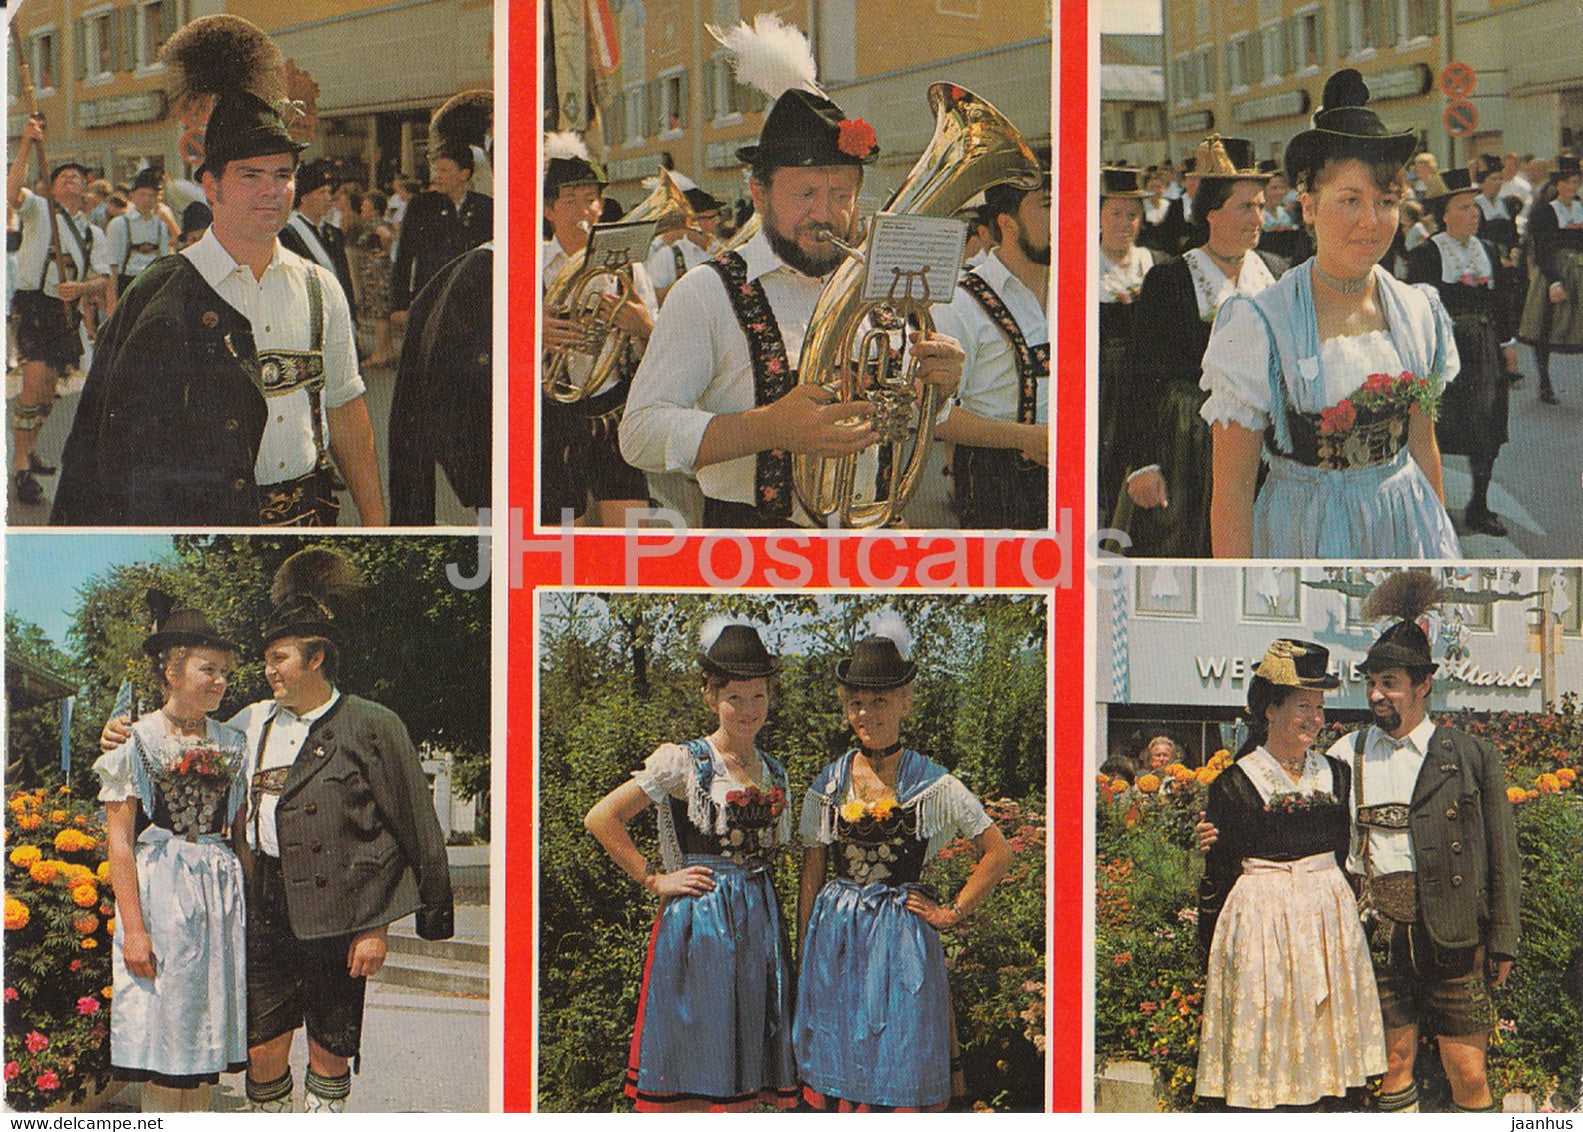 Bayerische Trachten im Chiemgau - music - folk costumes - Germany - unused - JH Postcards